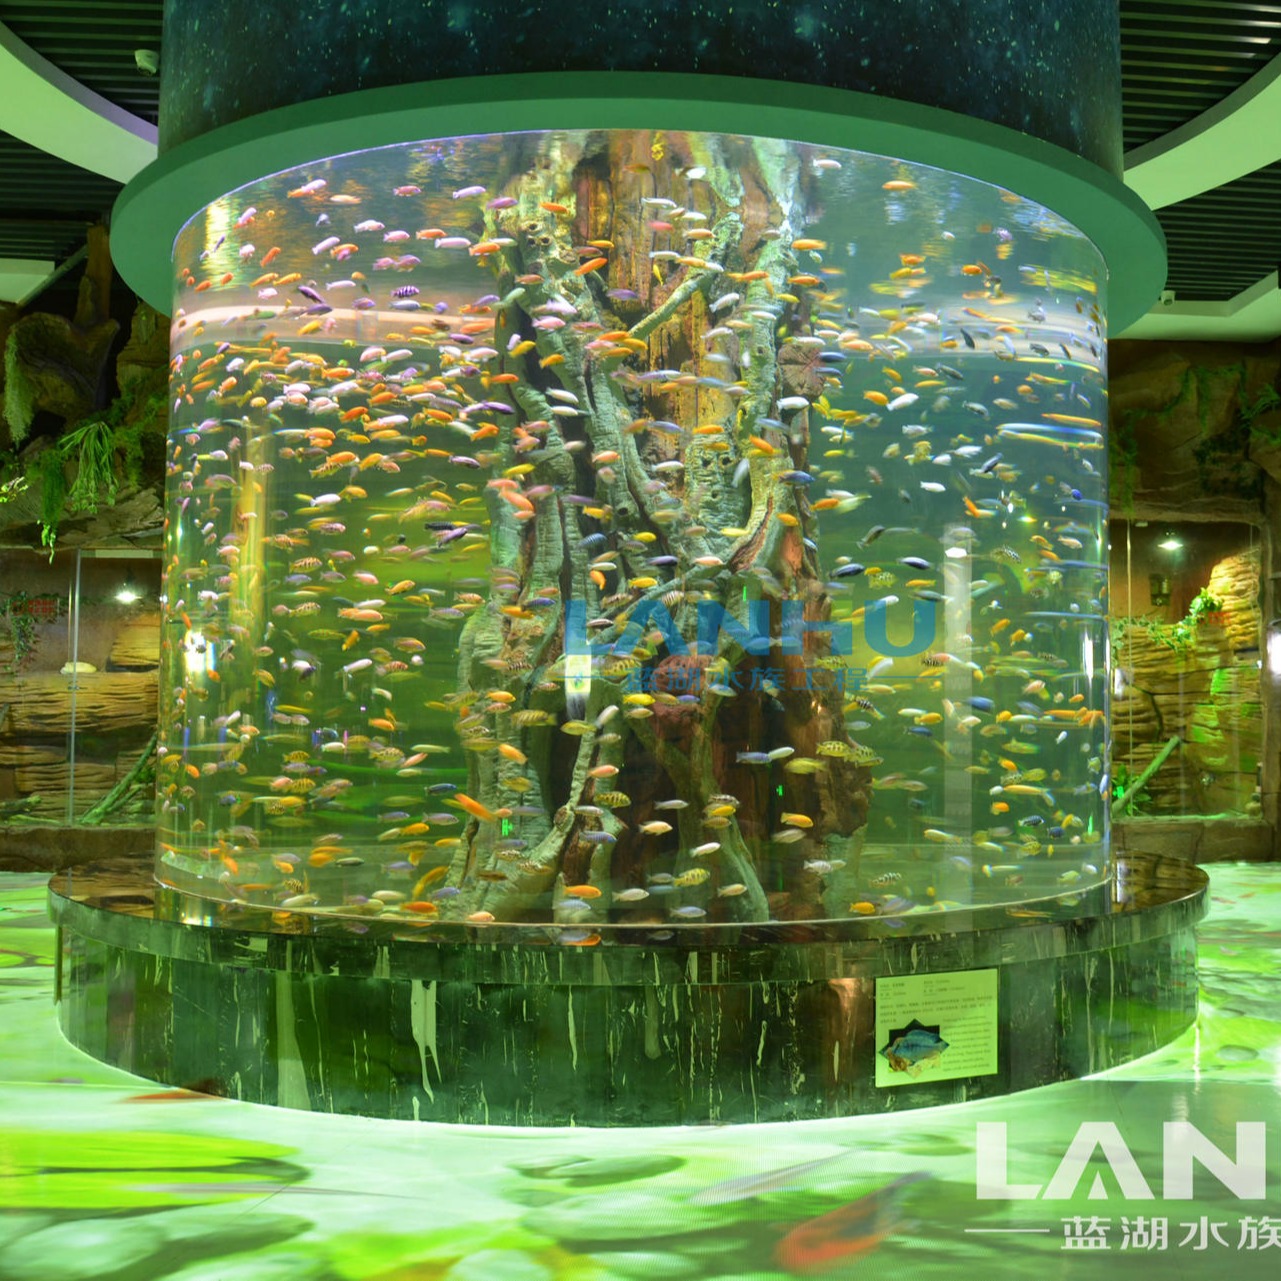 lanhu厂家大型鱼缸安装 海洋馆设计 施工 维护 水族工程 亚克力鱼缸 设计 圆柱鱼缸